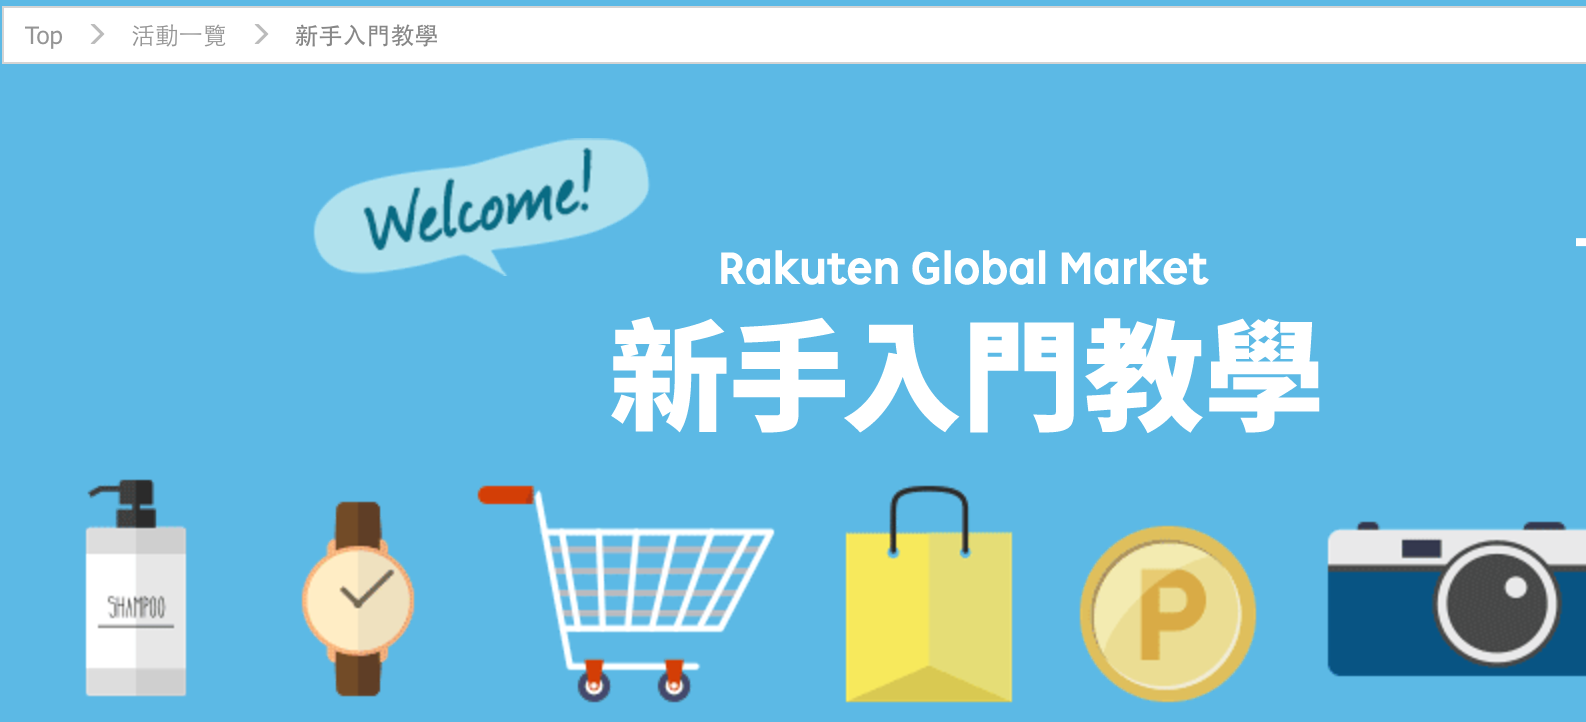 Rakuten Global Market 日本樂天 從註冊到下單教學文！